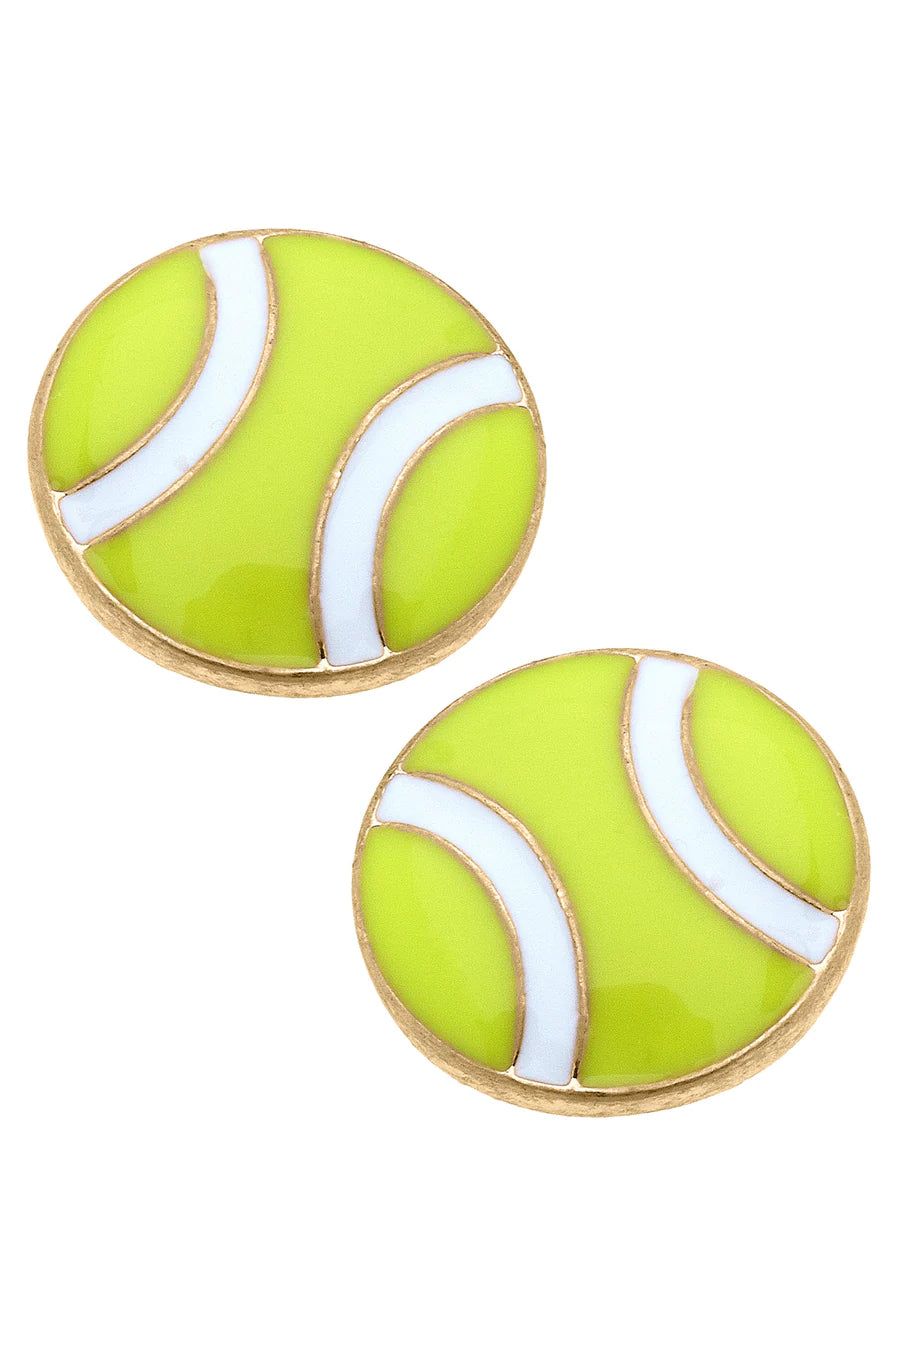 Maria Tennis Ball Enamel Stud Earrings in Neon Yellow